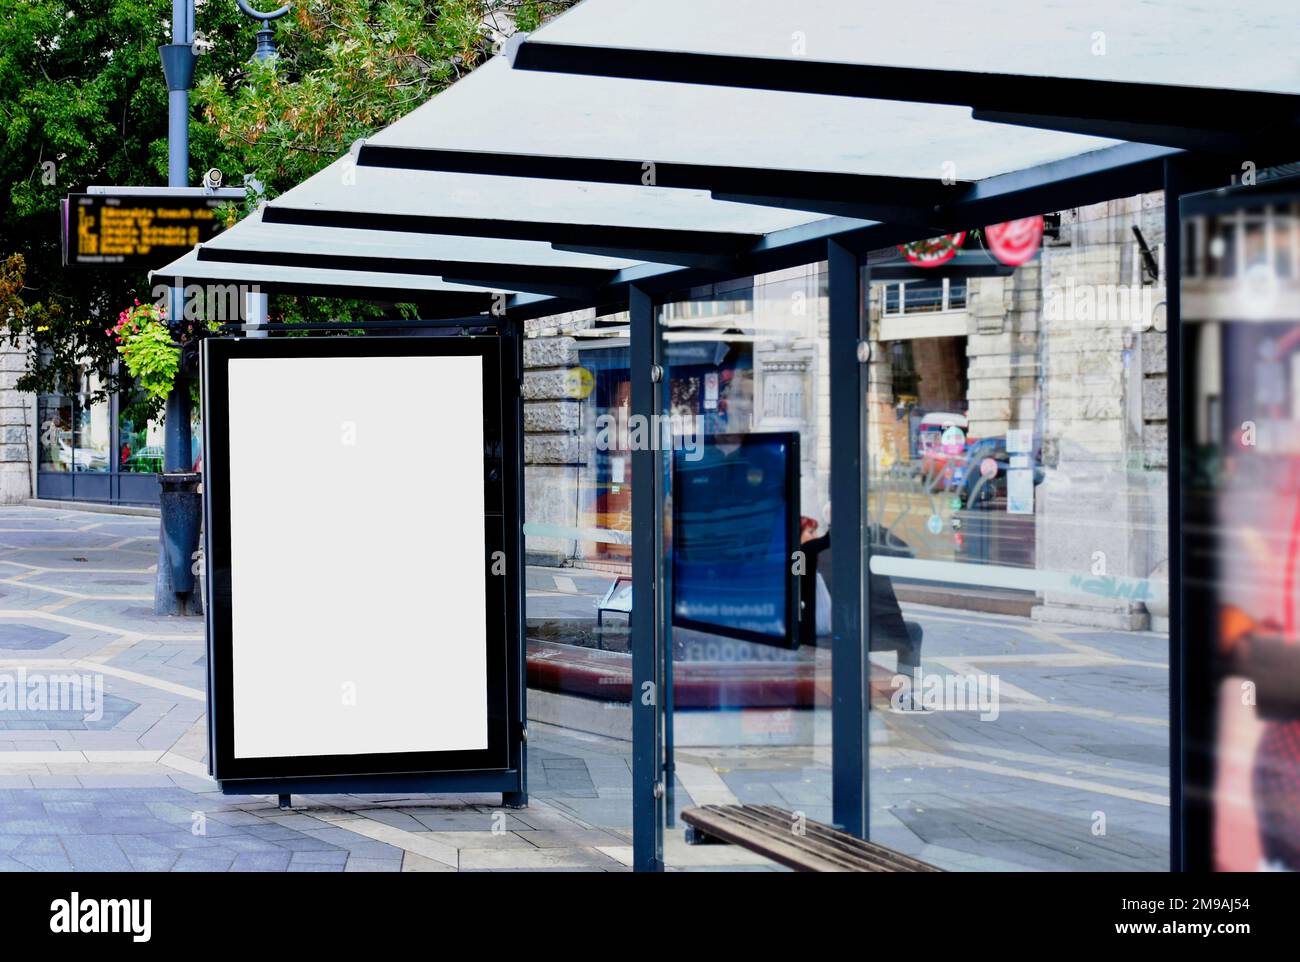 Busunterkunft mit Lightbox-Anzeigeschild. Modellhintergrund. Werbetafel aus Glas mit leerer weißer Anzeigefläche. Urbane Straßenlage. Schild für den Außenbereich Stockfoto